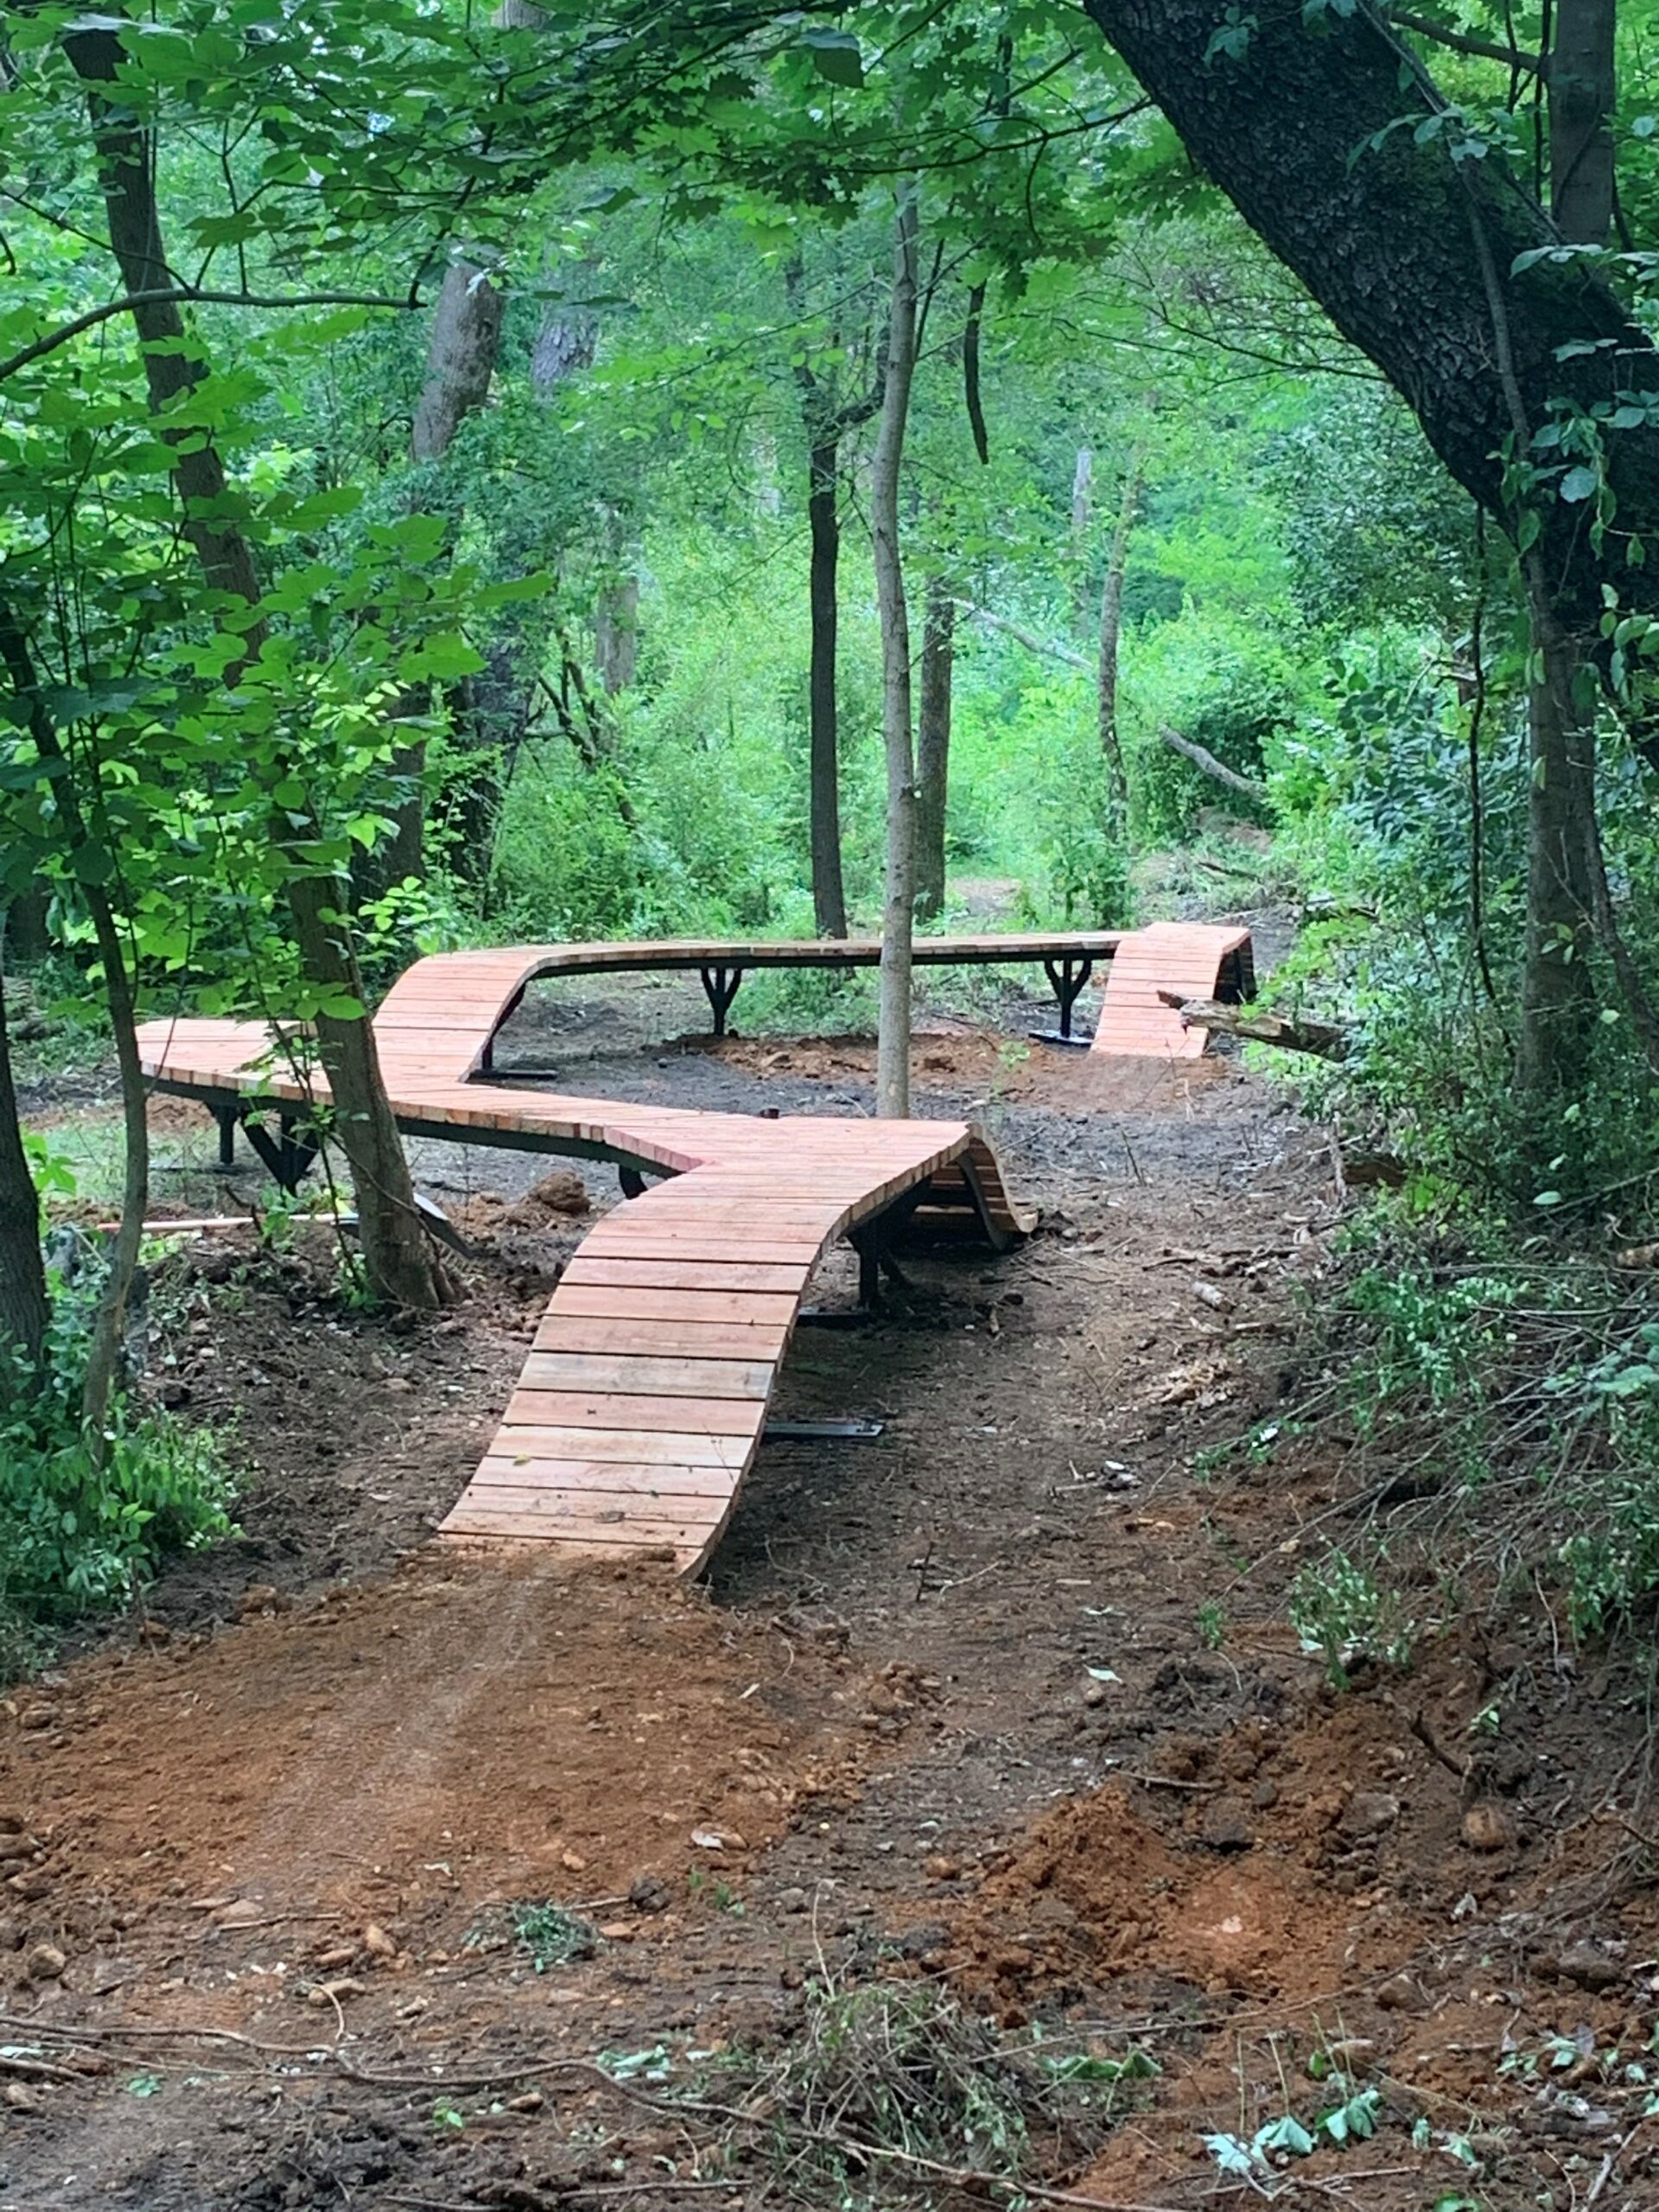 Morningside Bike Park ramps in the woods